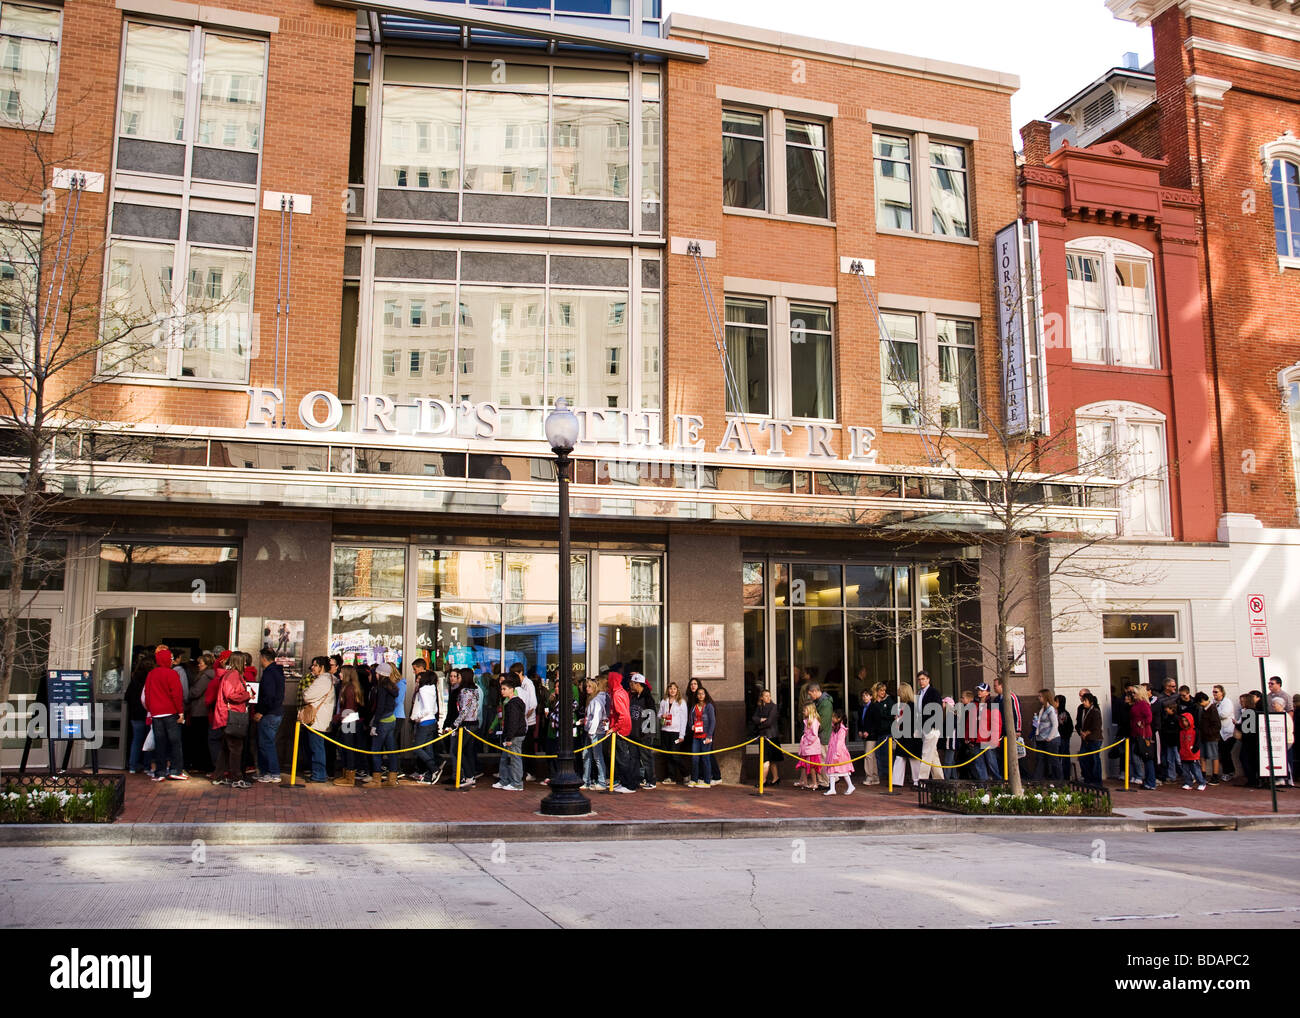 Besuchern stehen in Linie außerhalb Ford es Theater Stockfoto